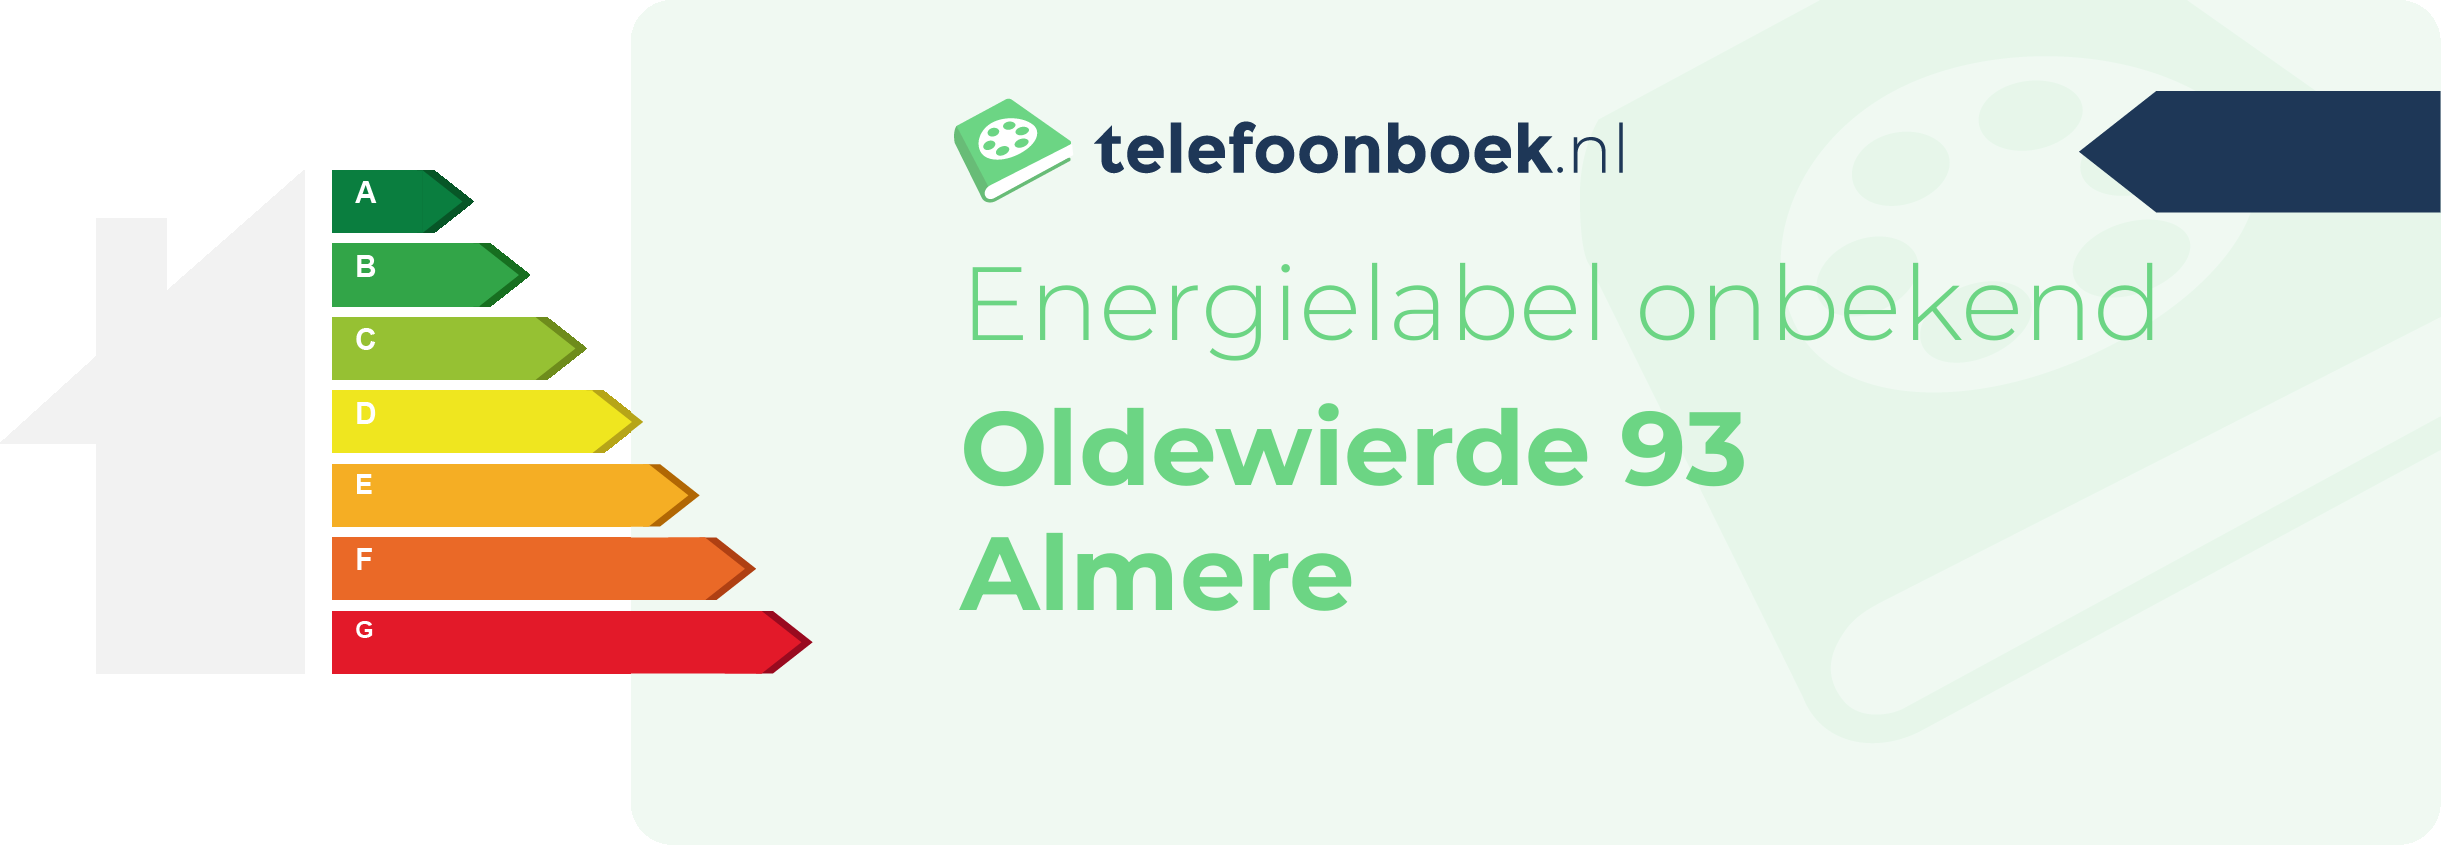 Energielabel Oldewierde 93 Almere